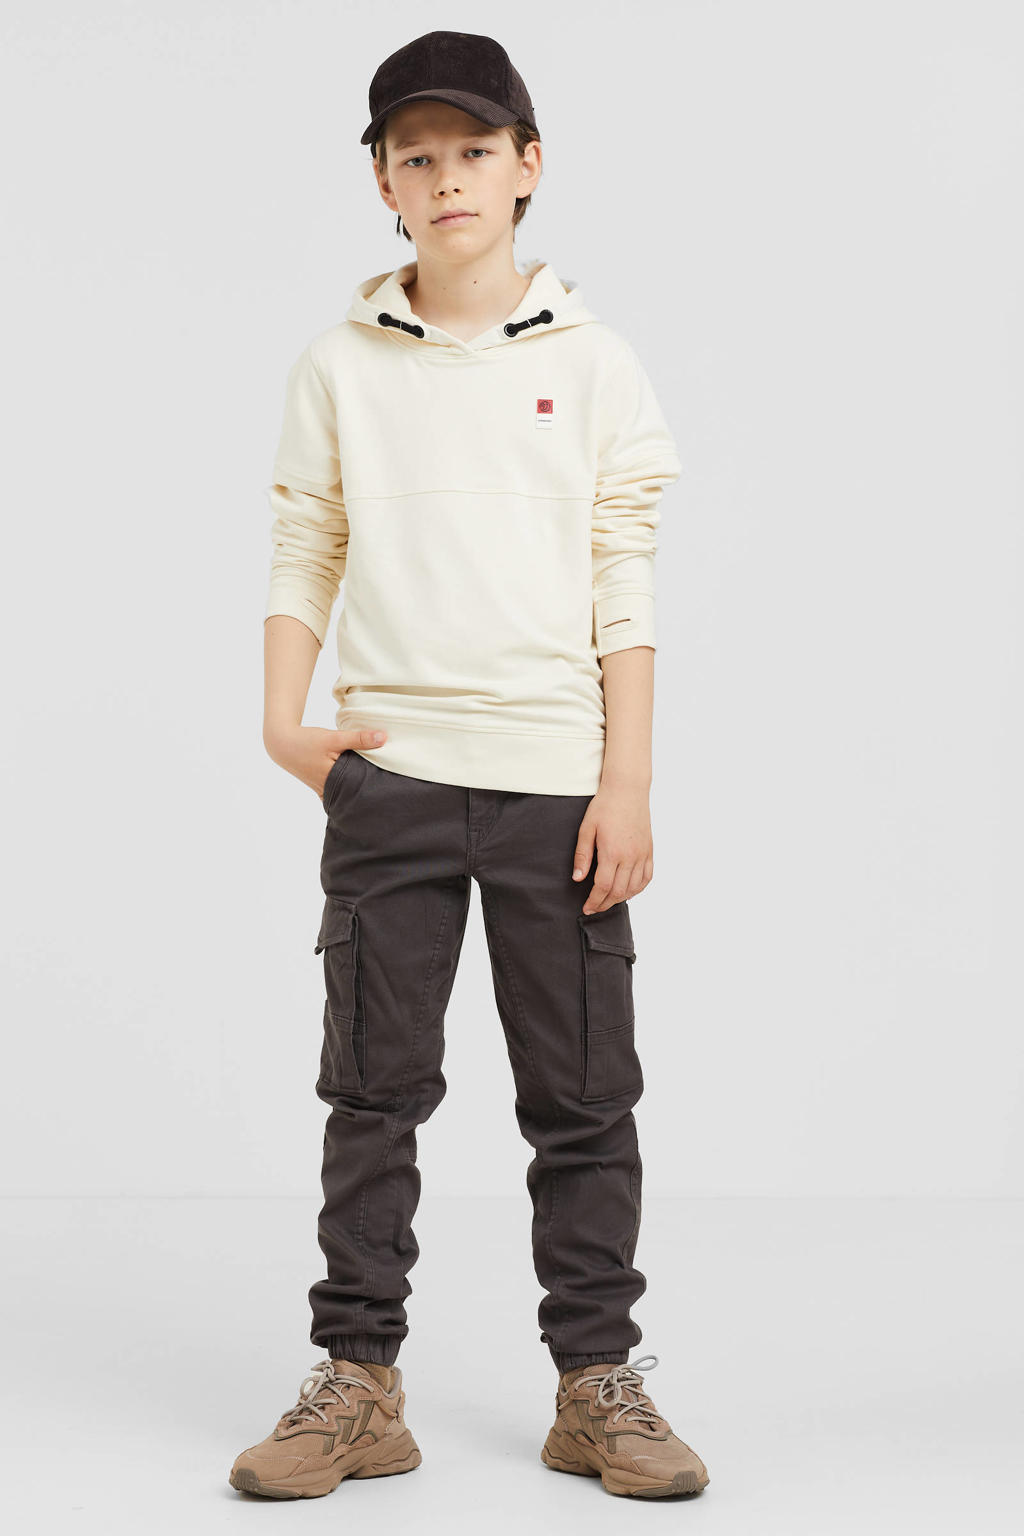 Witte jongens Vingino Essentials hoodie van sweat materiaal met lange mouwen en capuchon